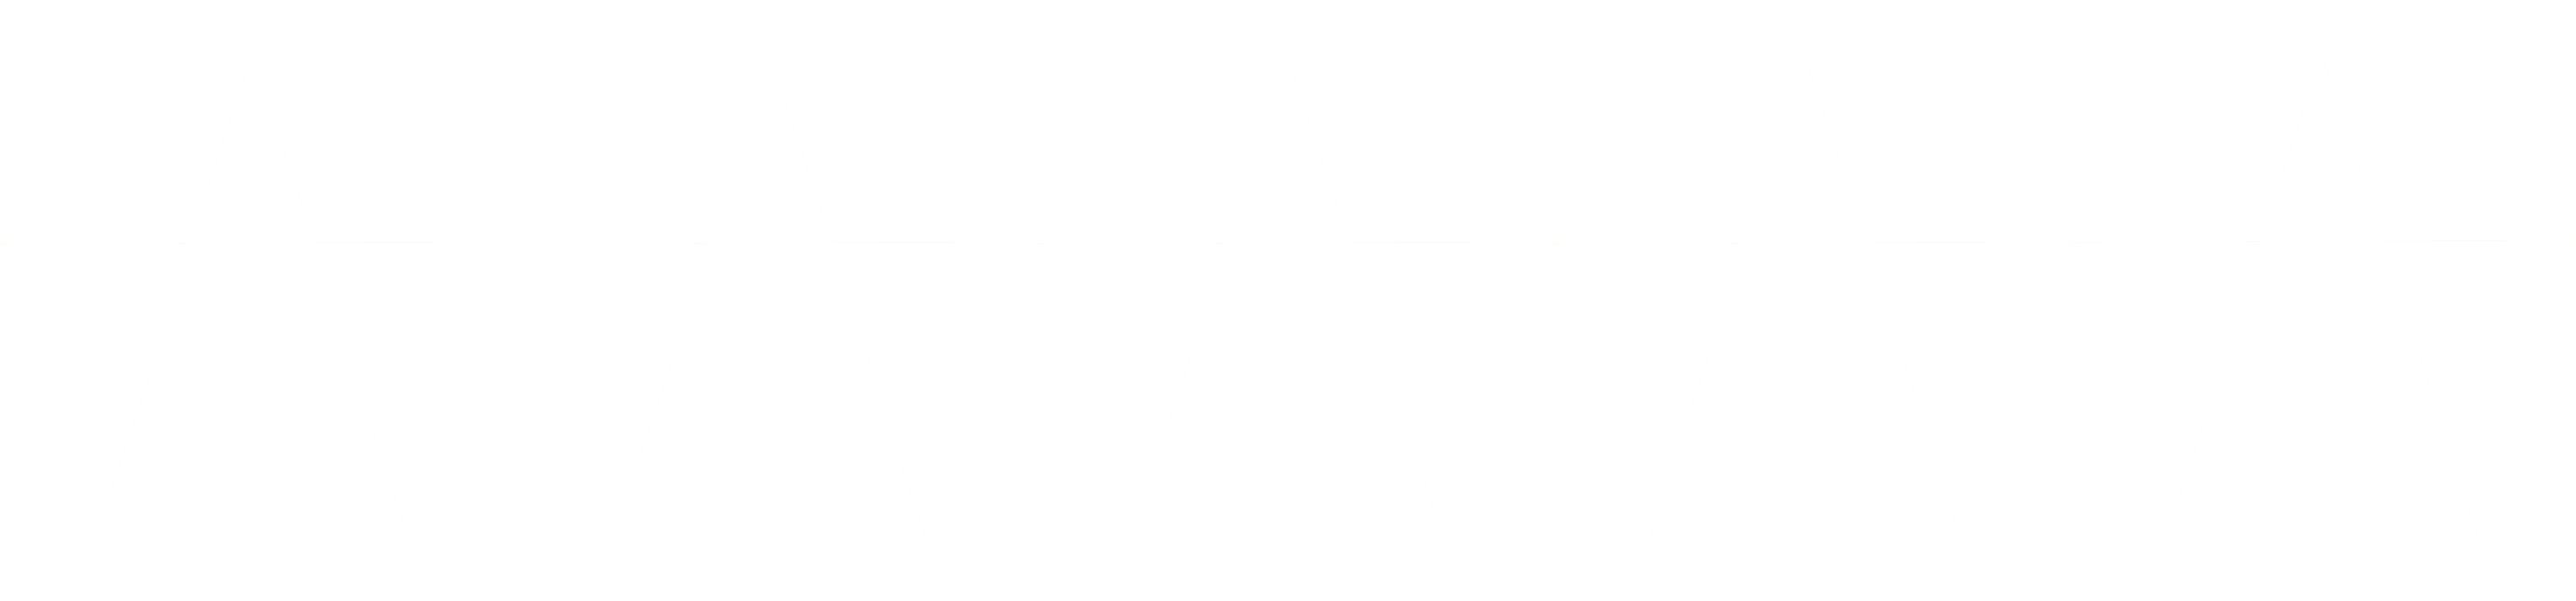 Fünf weiße Sterne